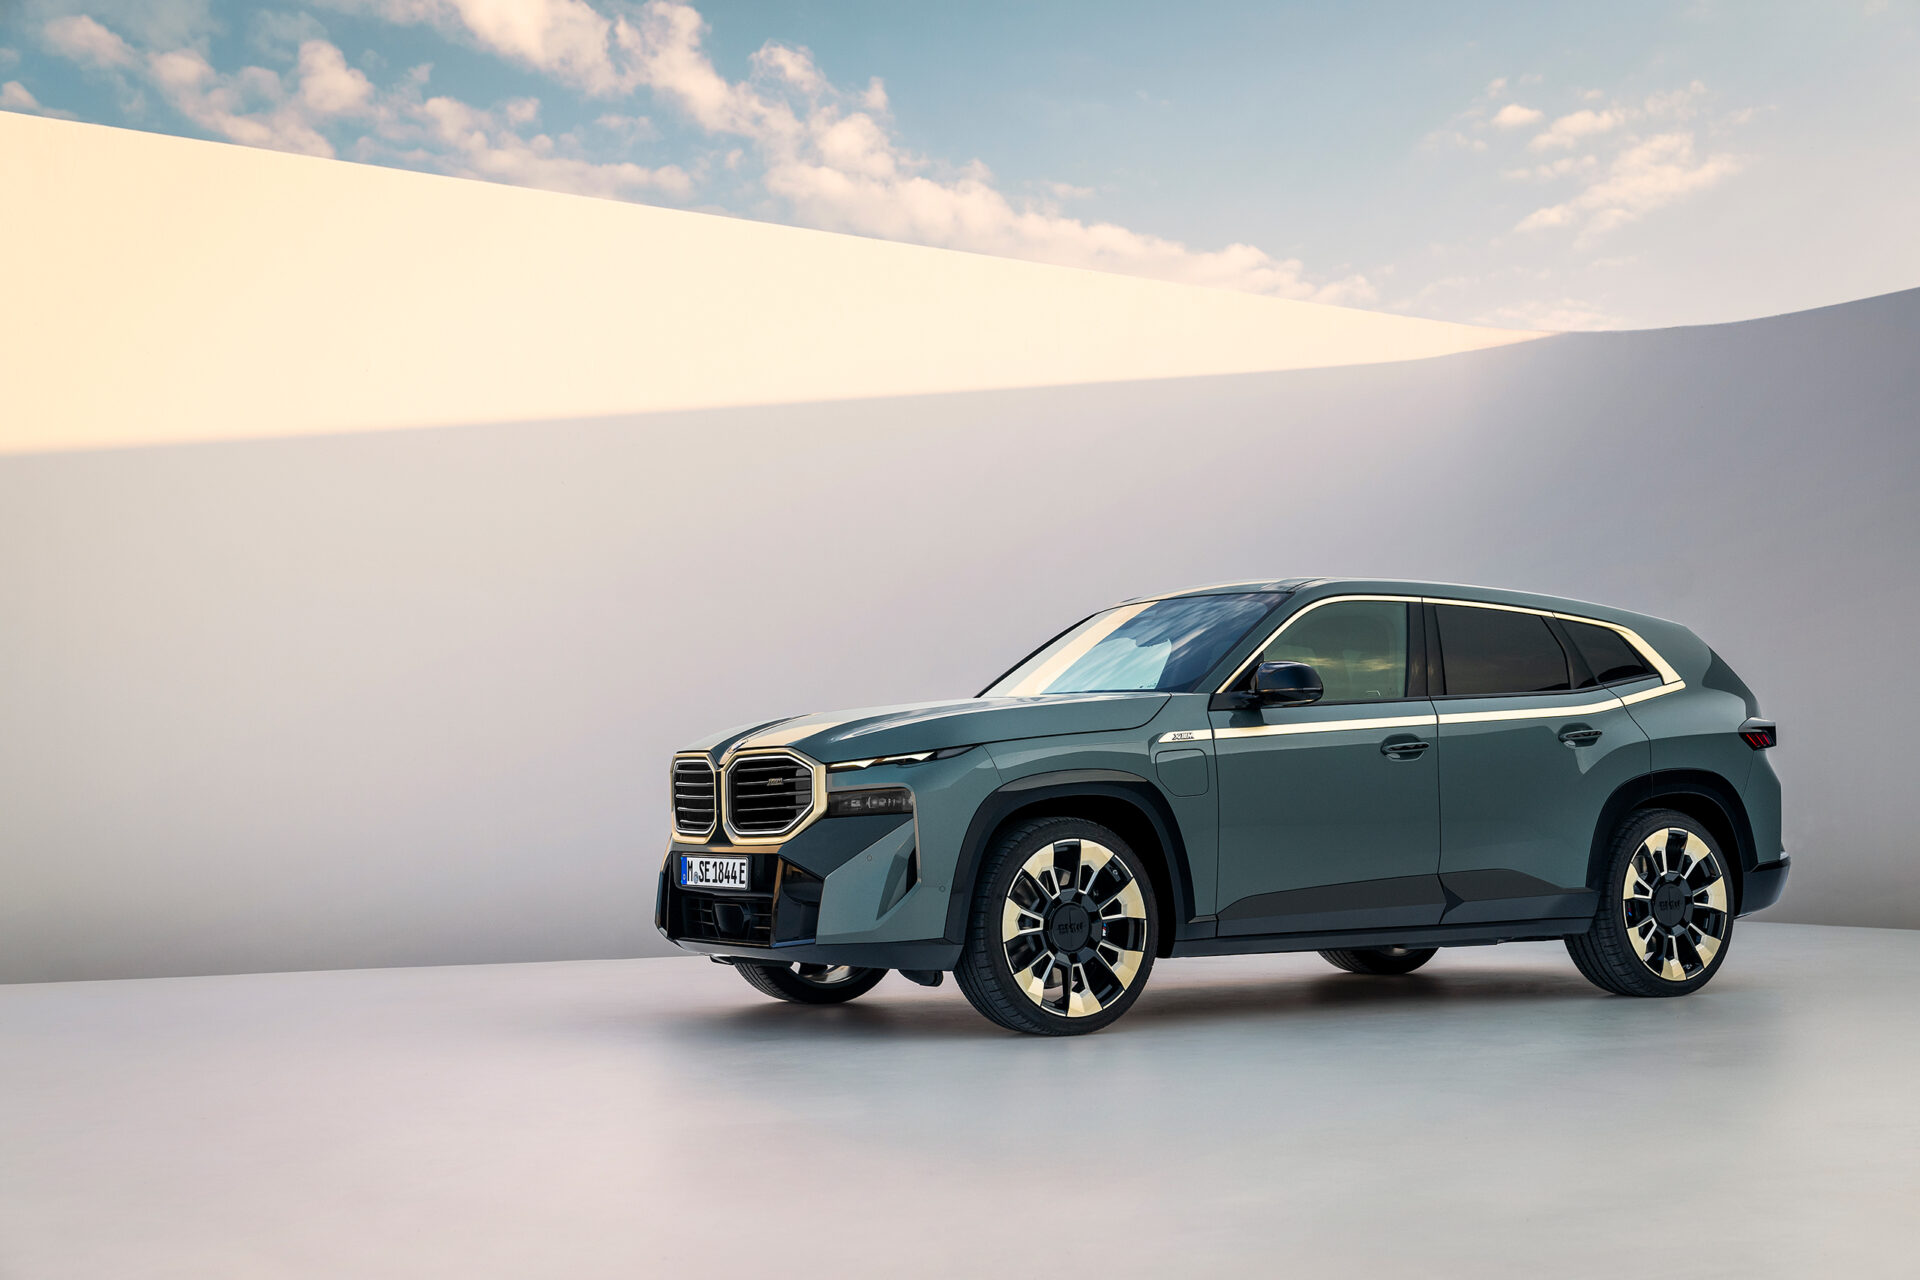 Компания BMW выпустила галерею официальных фотоизображений BMW XM 2023 года